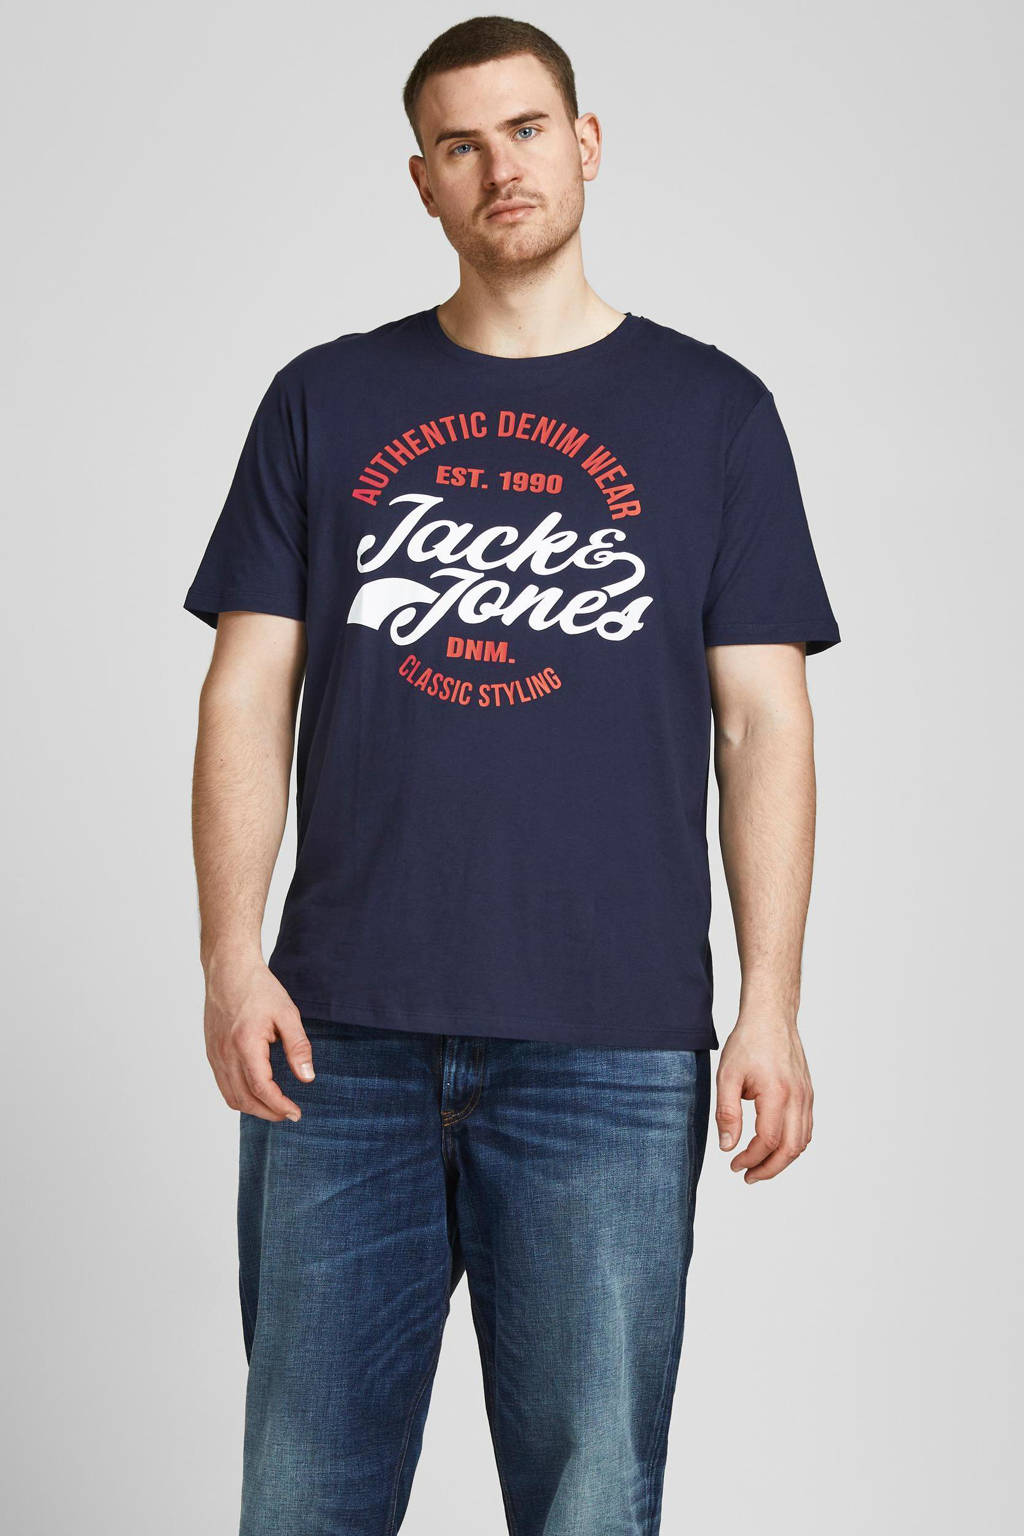 Donkerblauwe heren JACK & JONES PLUS SIZE T-shirt Plus Size van katoen met logo dessin, korte mouwen en ronde hals